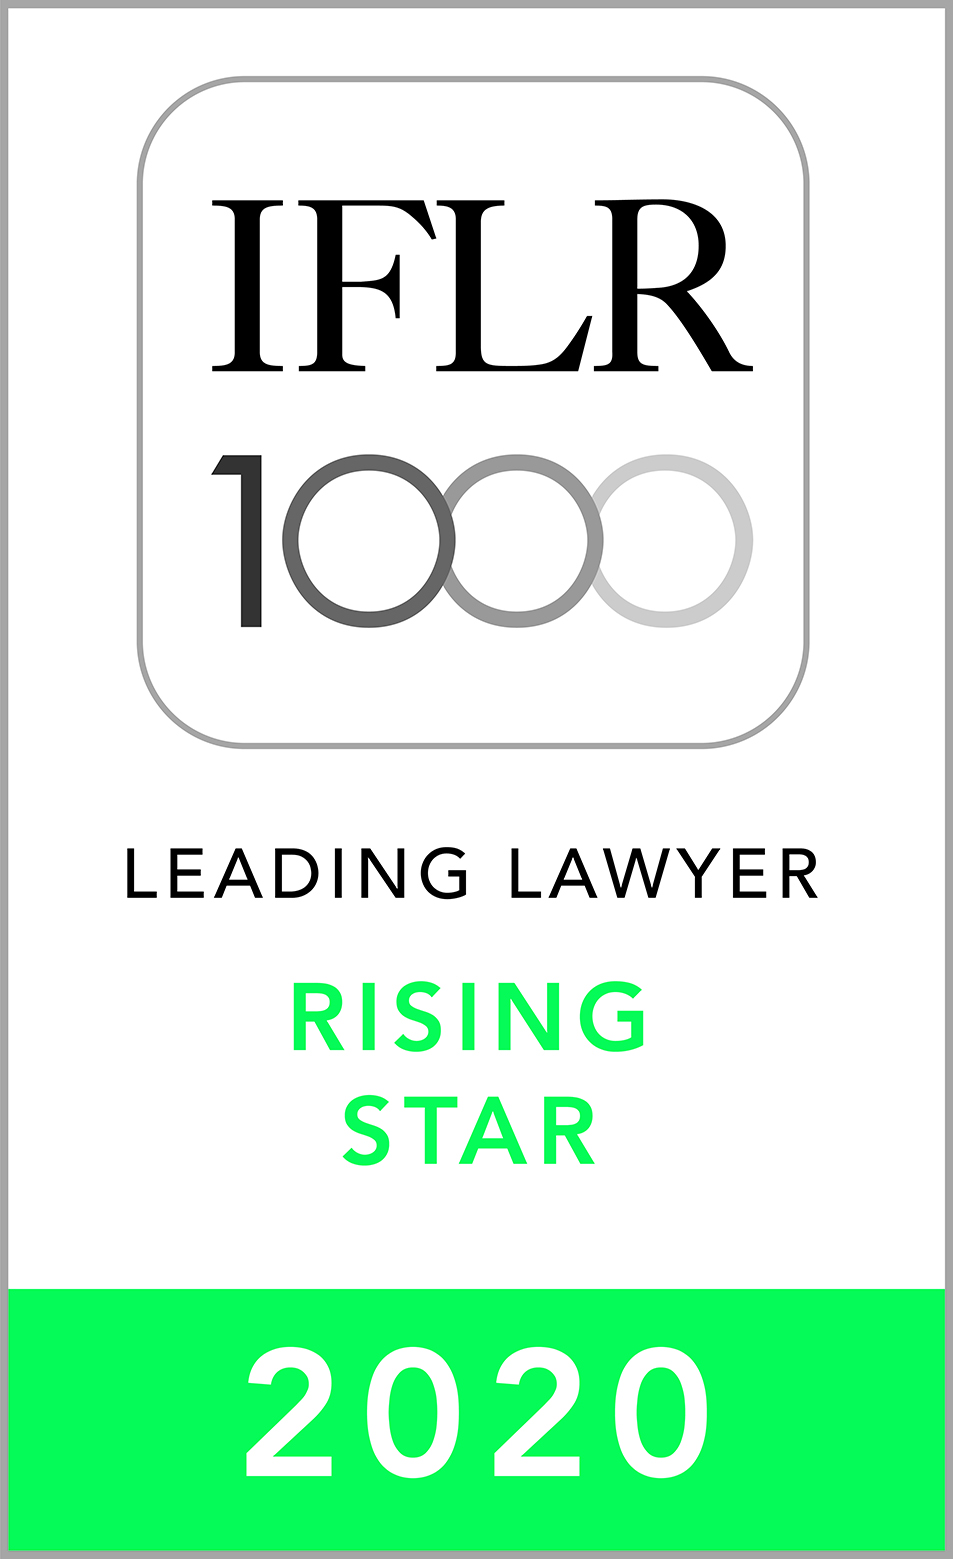 IFLR Rising Star 20